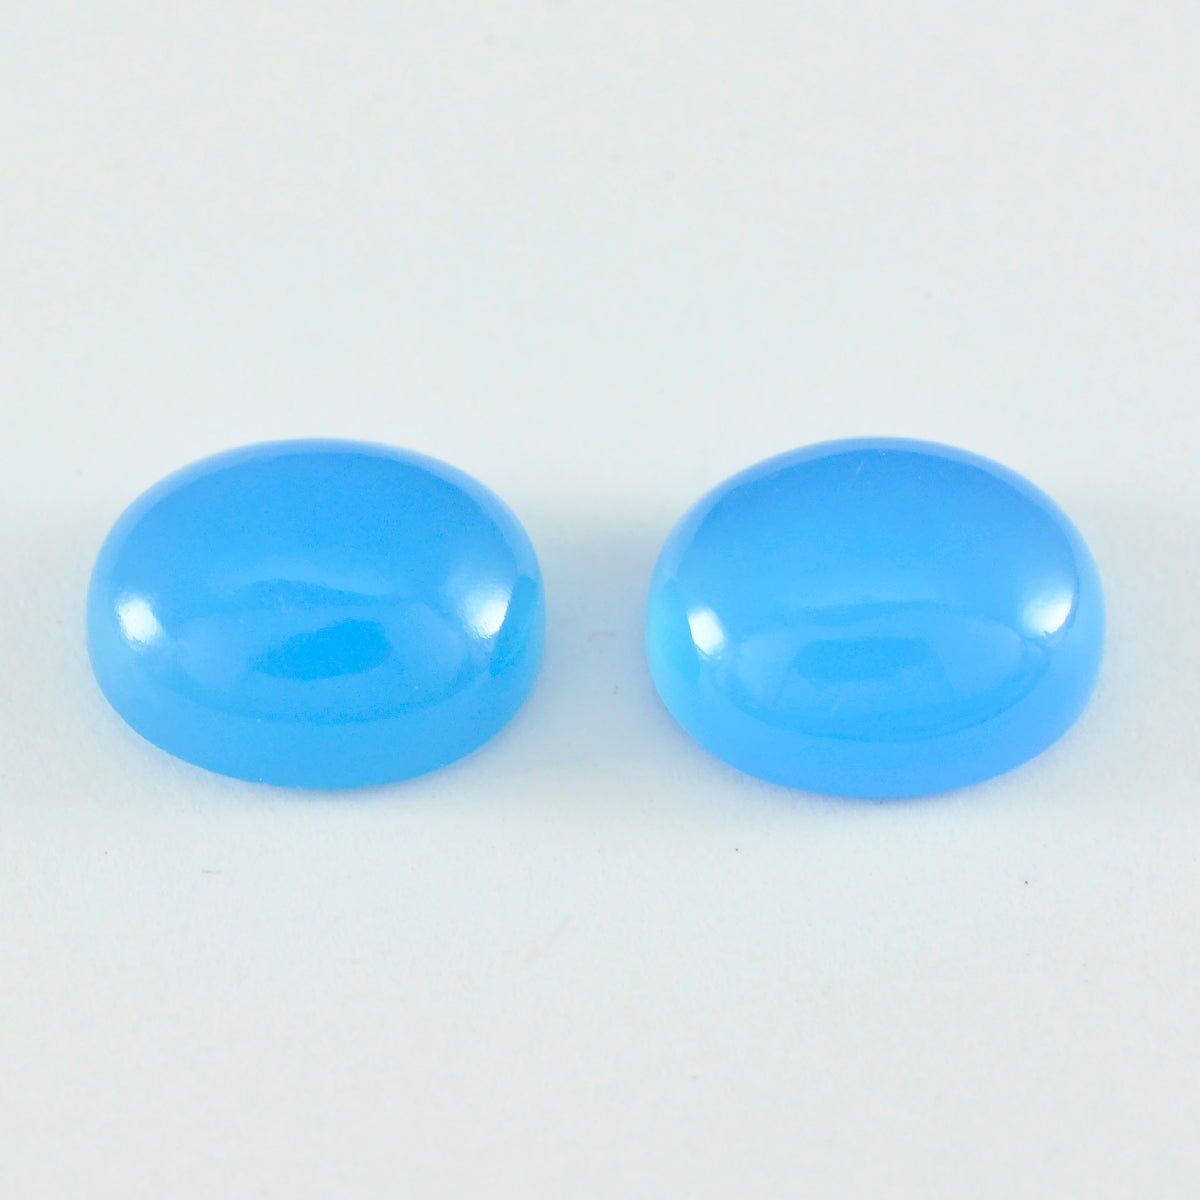 Riyogems 1 pieza cabujón de Calcedonia azul 10x12mm forma ovalada gema de calidad de belleza